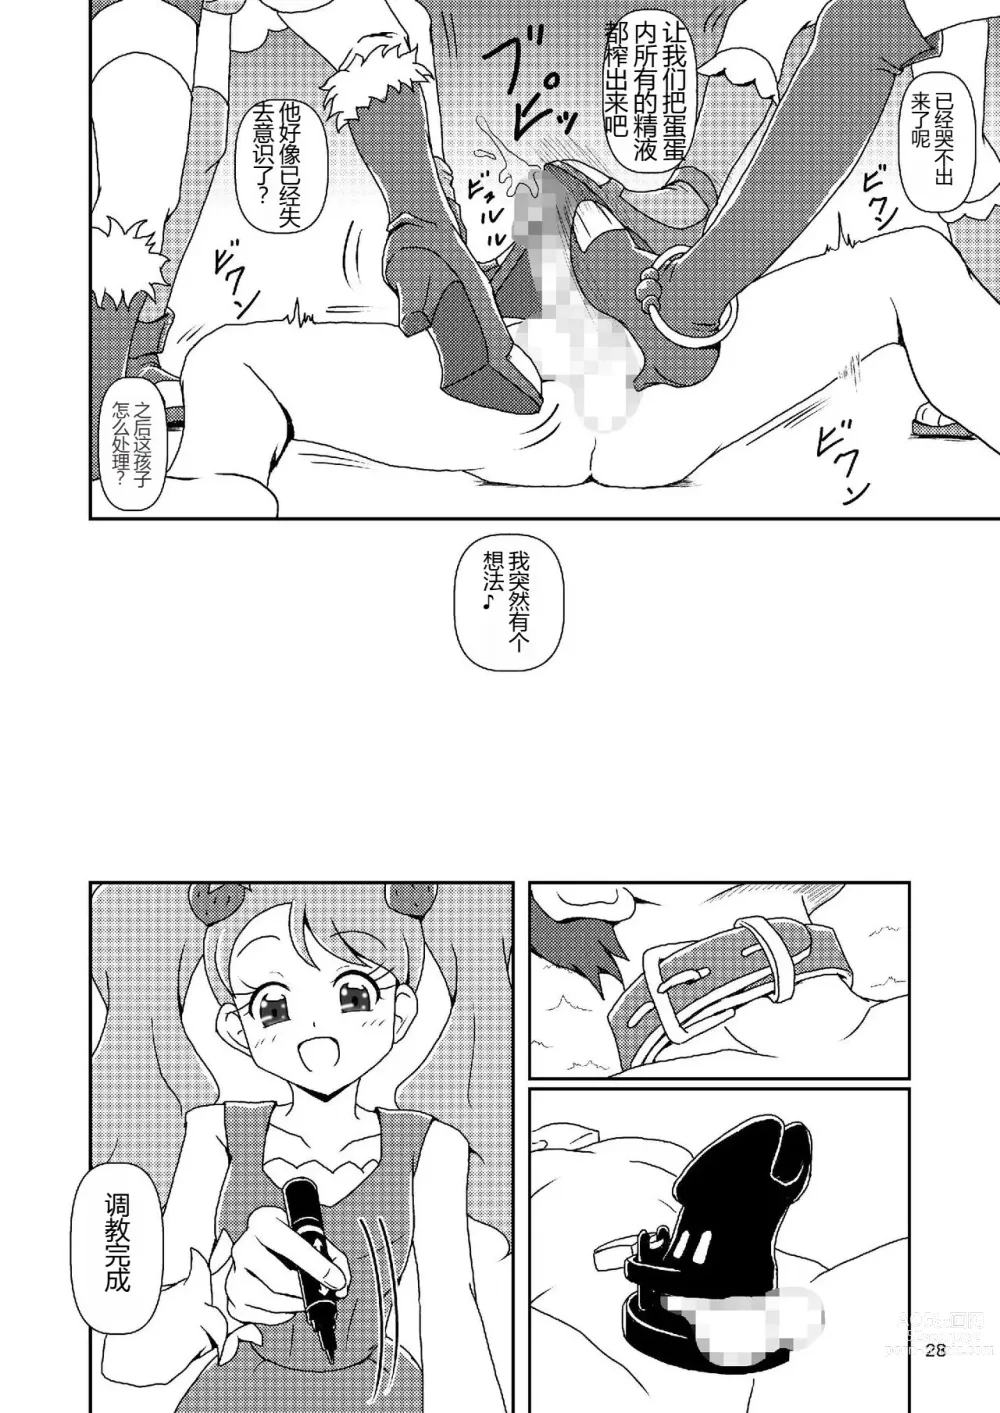 Page 27 of doujinshi Kirakira Zuricure Ashi Mode